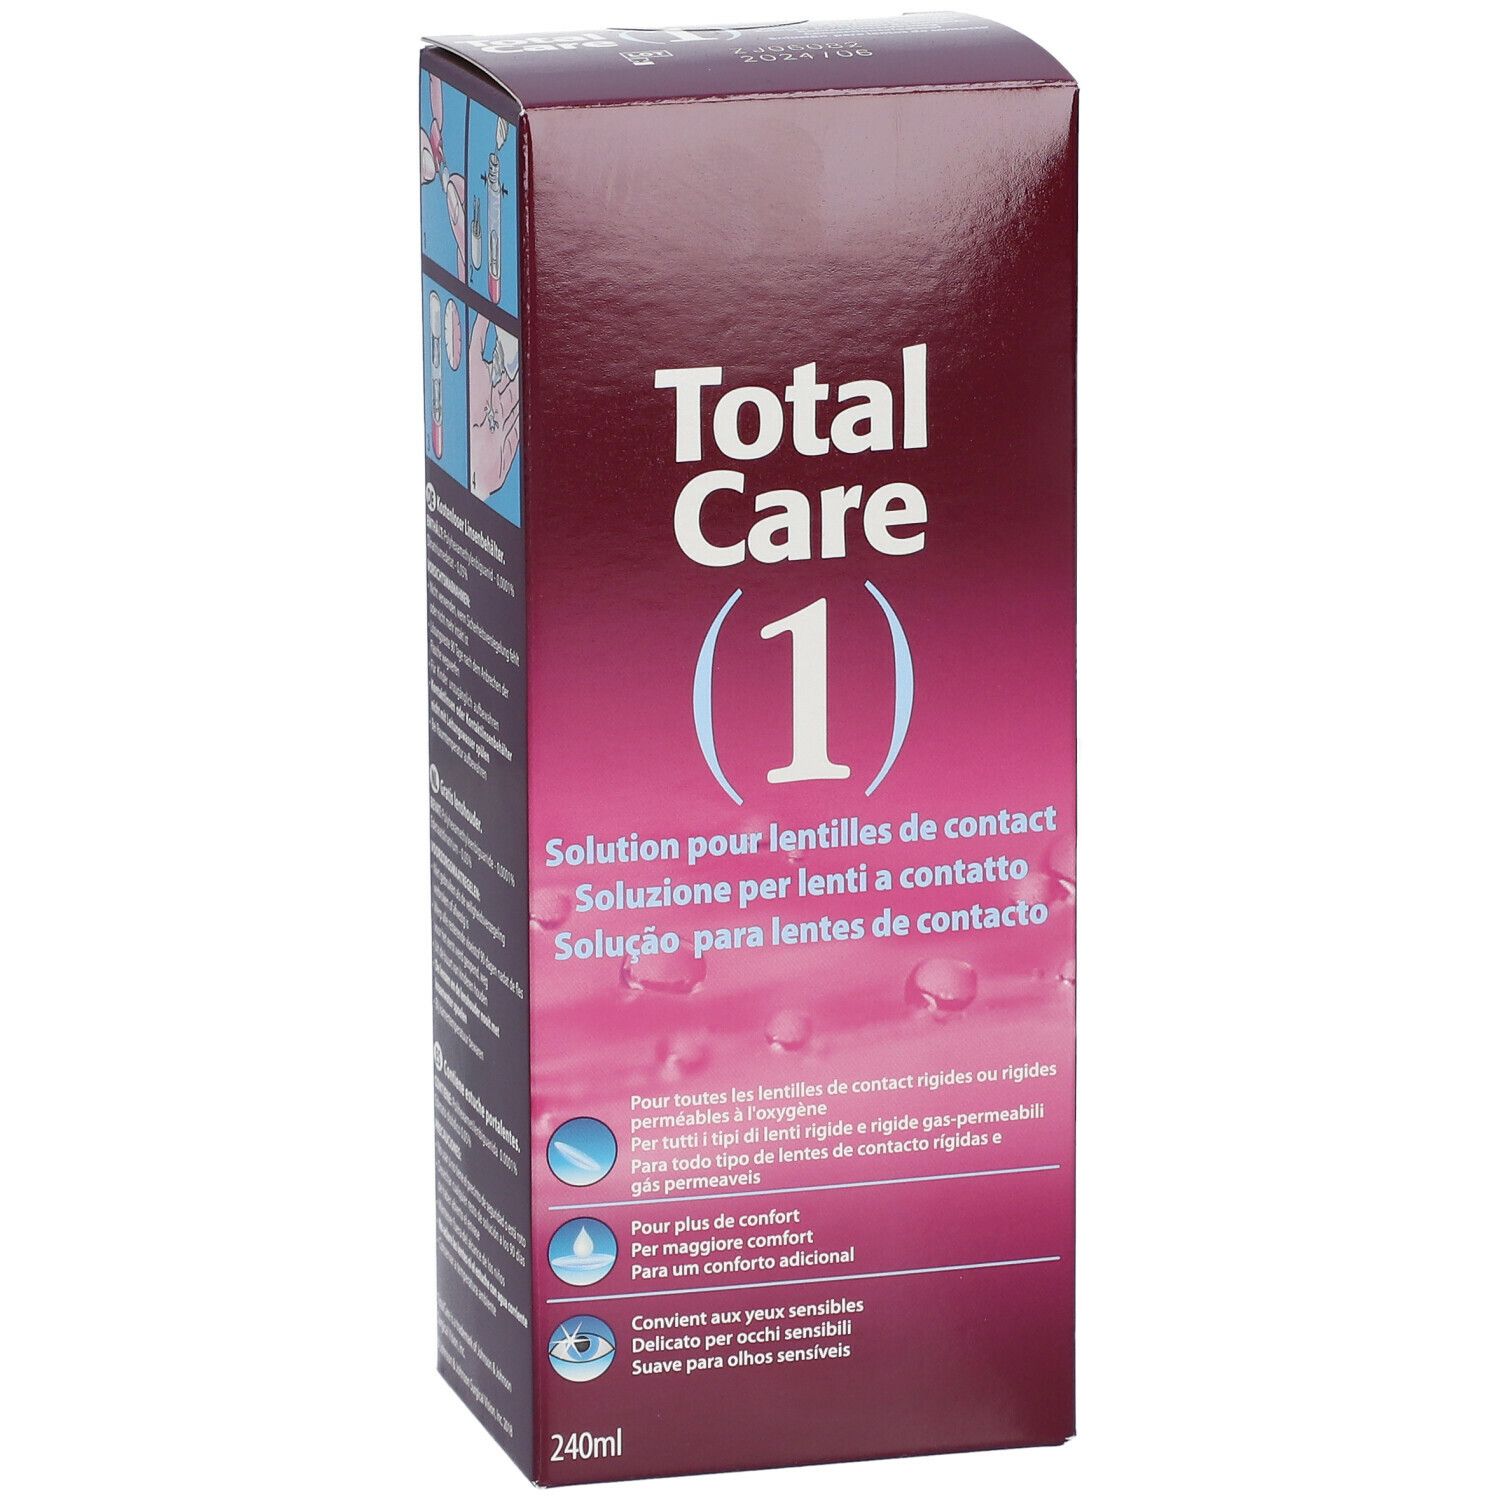 Total Care 1 All-In-One Solution pour lentilles de contact + Etui à lentilles